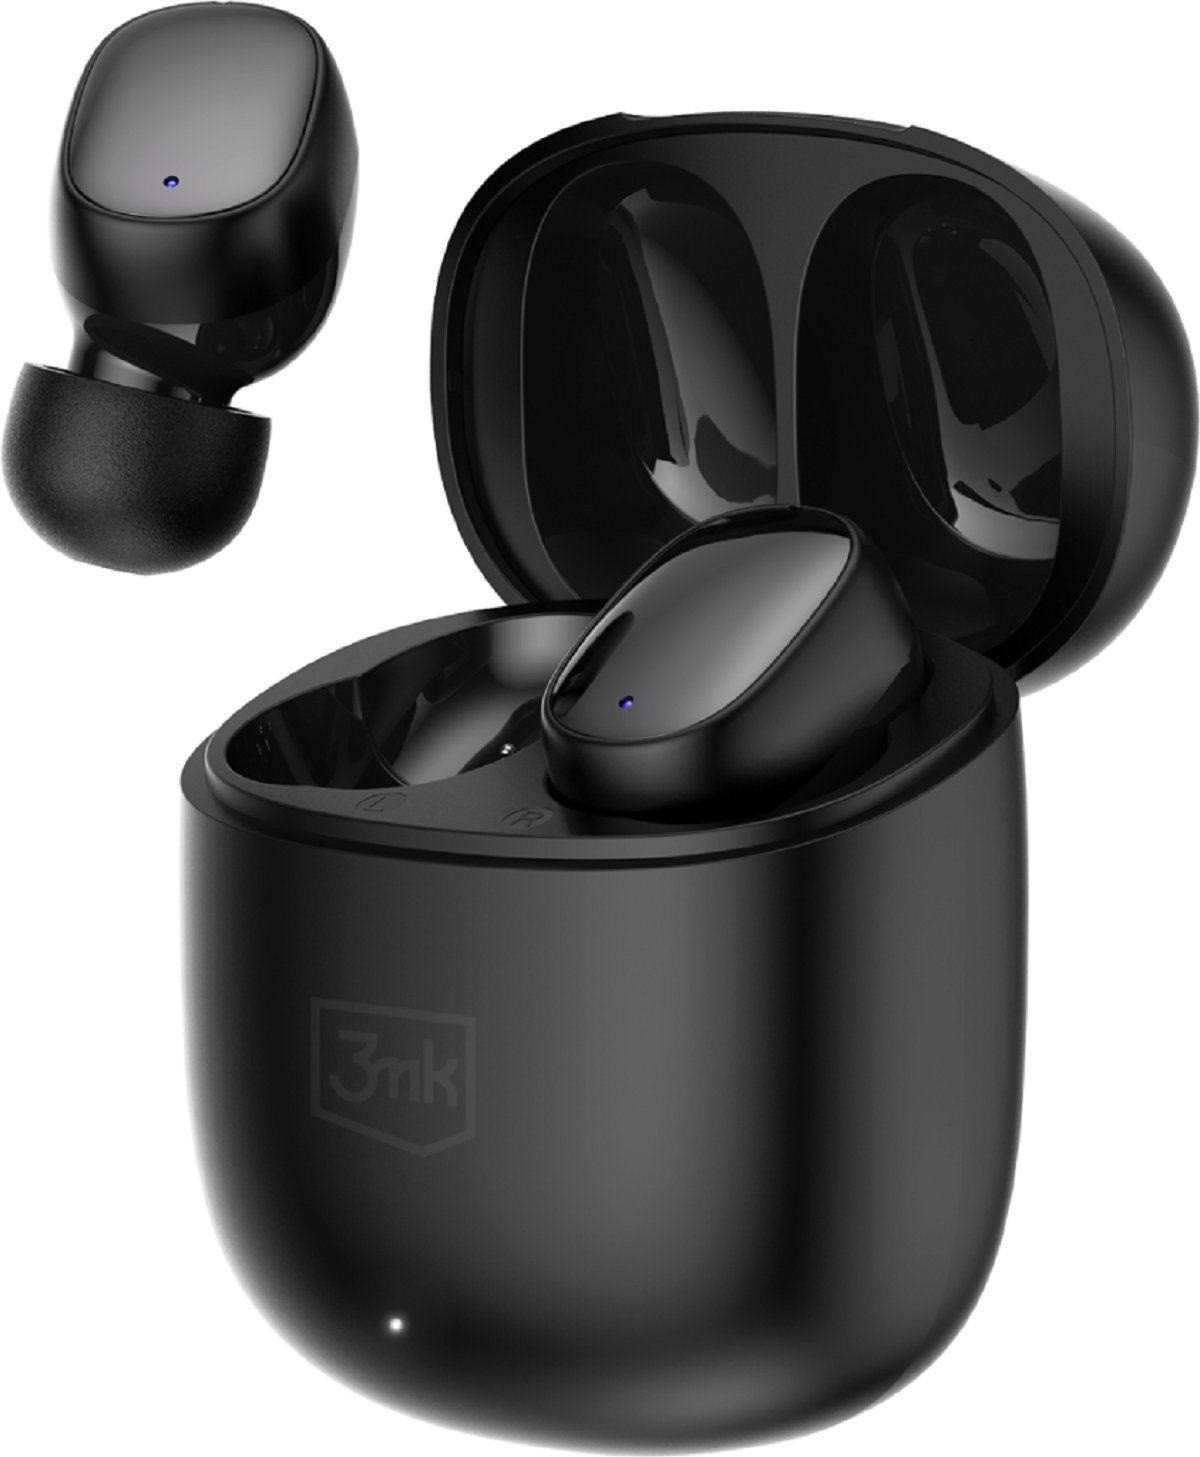 3MK TWS Bluetooth 5.3 Hintergrundgeräuschen) kabellose FlowBuds Bluetooth, FlowBuds, ununterbrochenes Unterdrückung 6,5 von Kopfhörer Stunden Hören, Bluetooth-Kopfhörer (Touch-Funktion